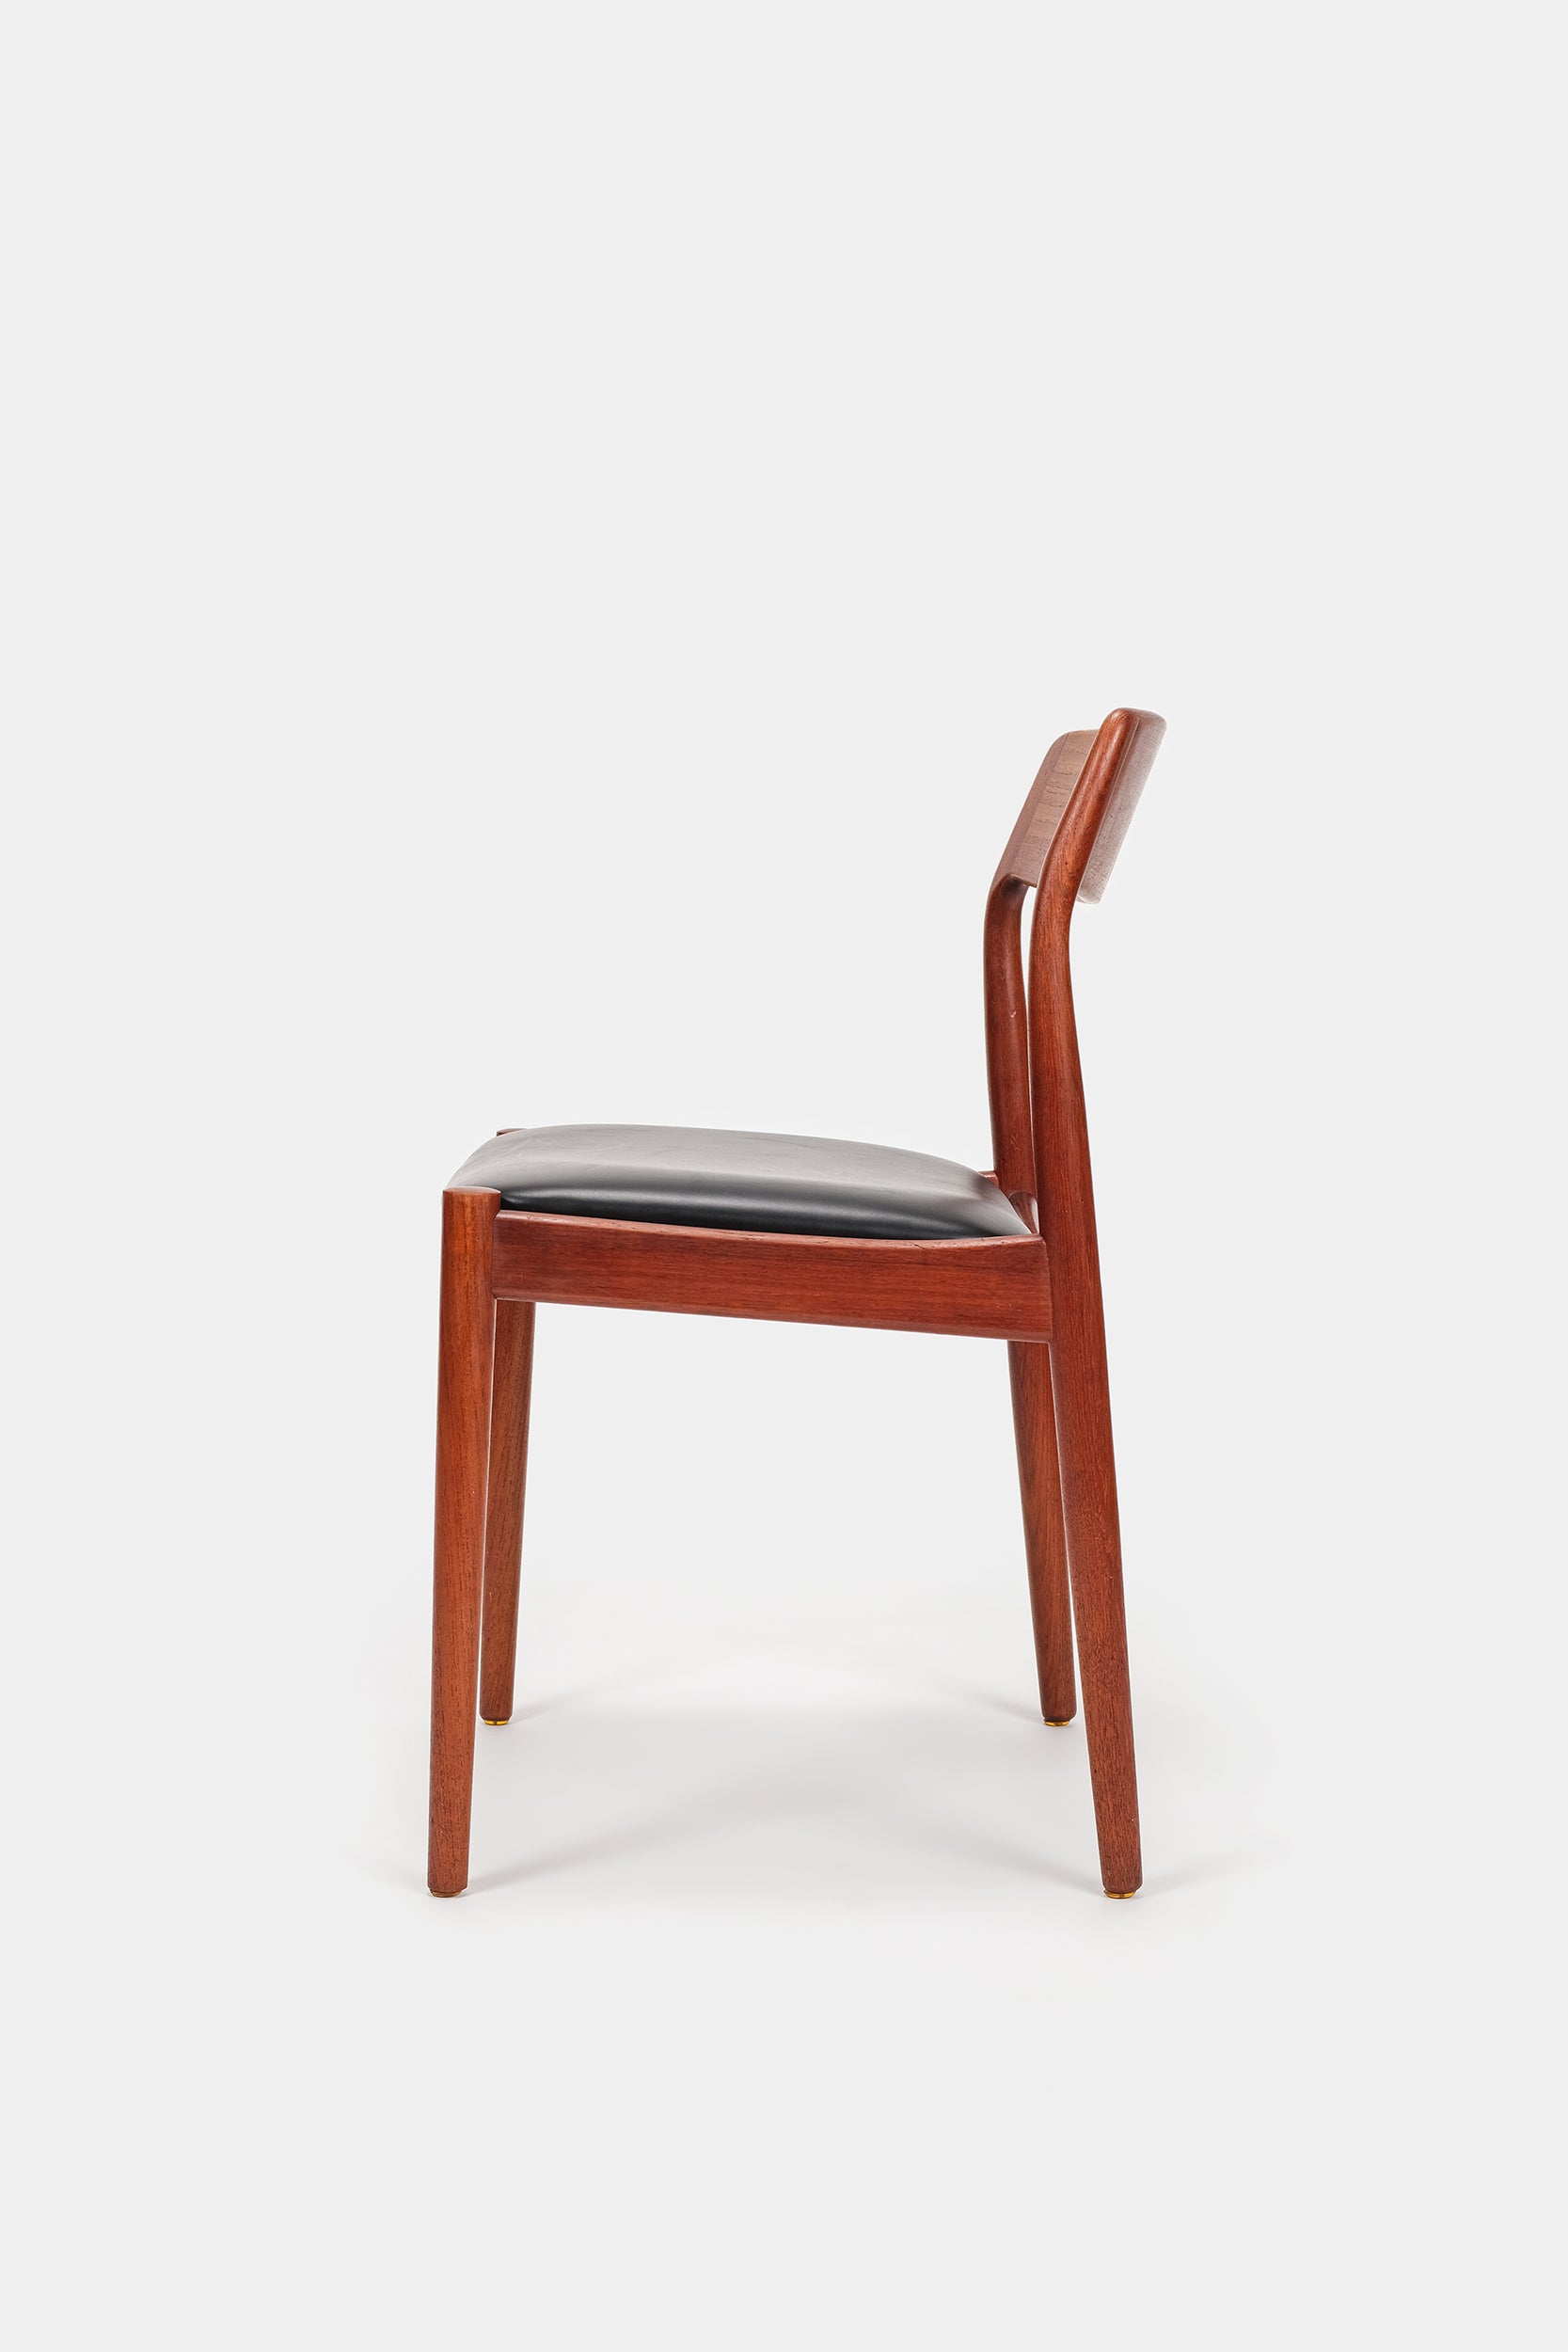 Johannes Nørgaard, Chair, Teak and Leather, Denmark, 60s